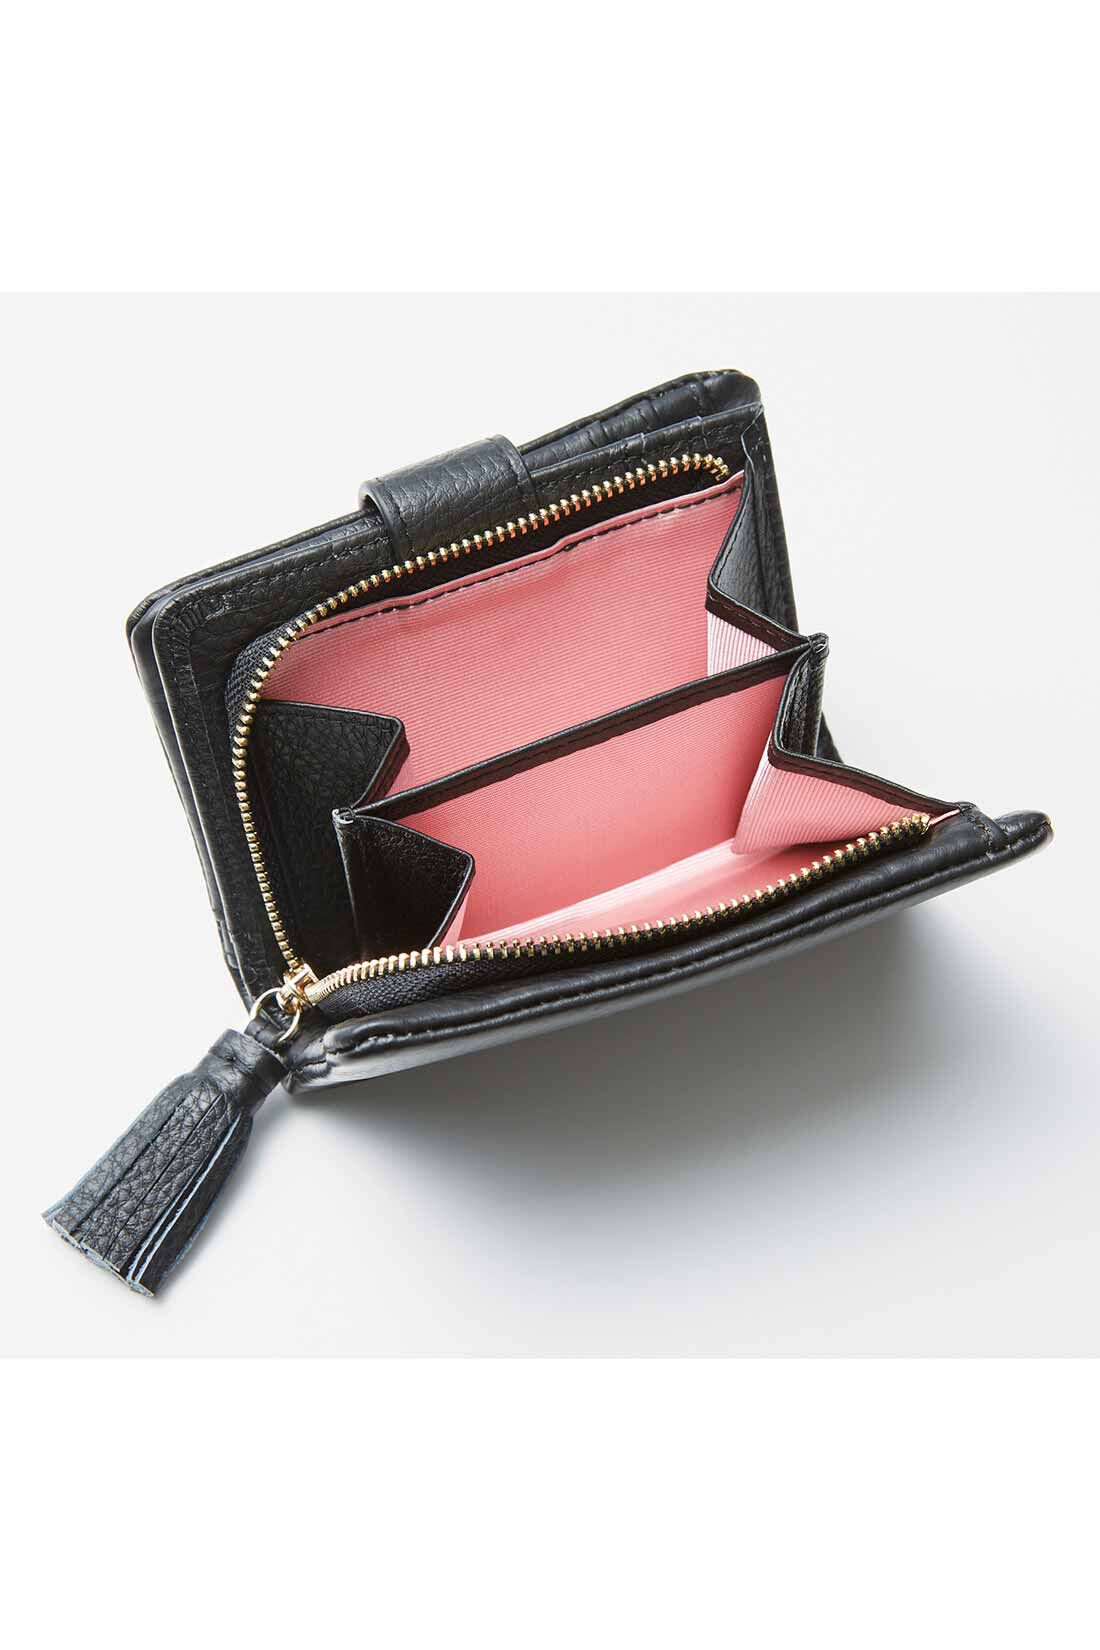 IEDIT[イディット]　くったり本革素材できれいめ二つ折り財布〈ブラック〉|大きく開くサイドまち付きで、小銭の出し入れもらくらく。内側は気分が上がるカラーに。